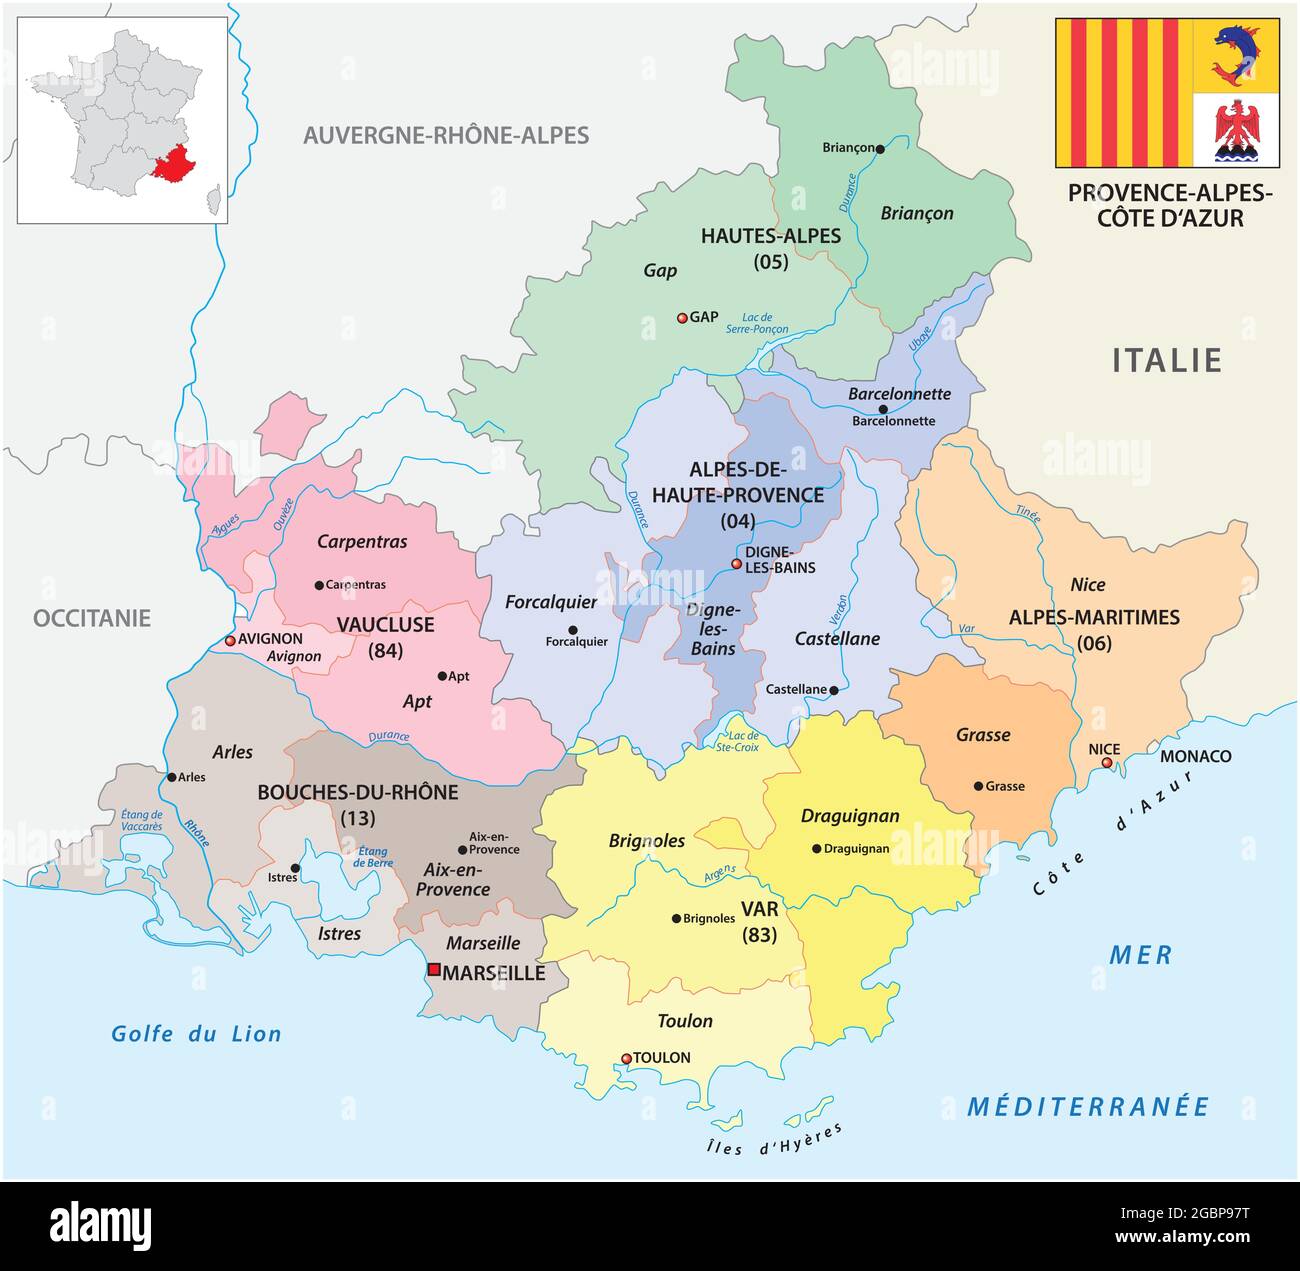 Carte vectorielle administrative de la région Provence-Alpes-Côte d'Azur avec drapeau Illustration de Vecteur